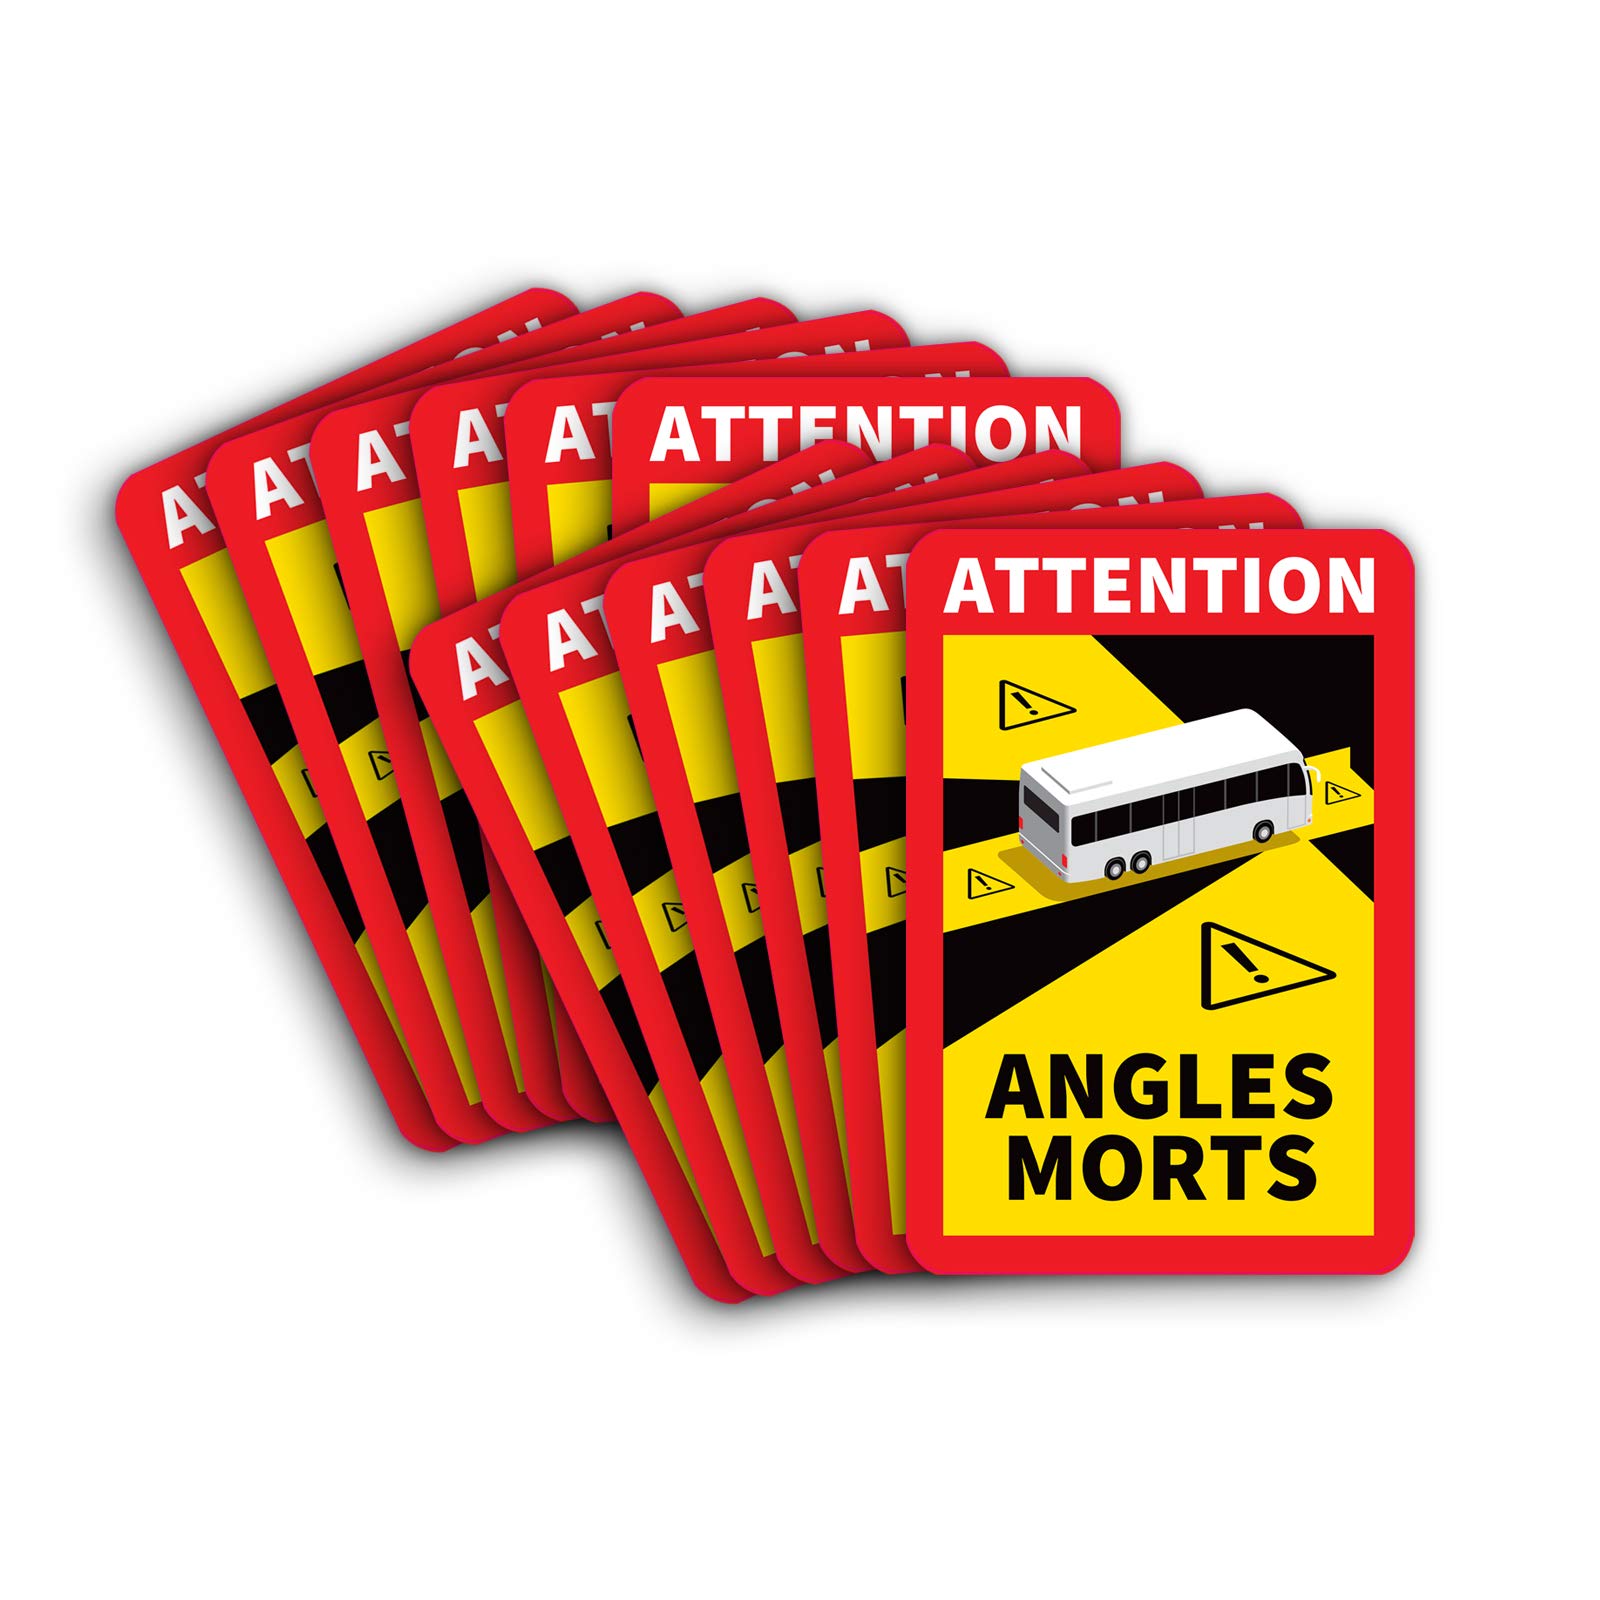 12 Stück Attention Angles Morts Magnetschilder 25 x 17 cm Magnet für Bus und Wohnwagen Warntafel Hinweiszeichen Schild Frankreich mit UV Schutz von STROBO